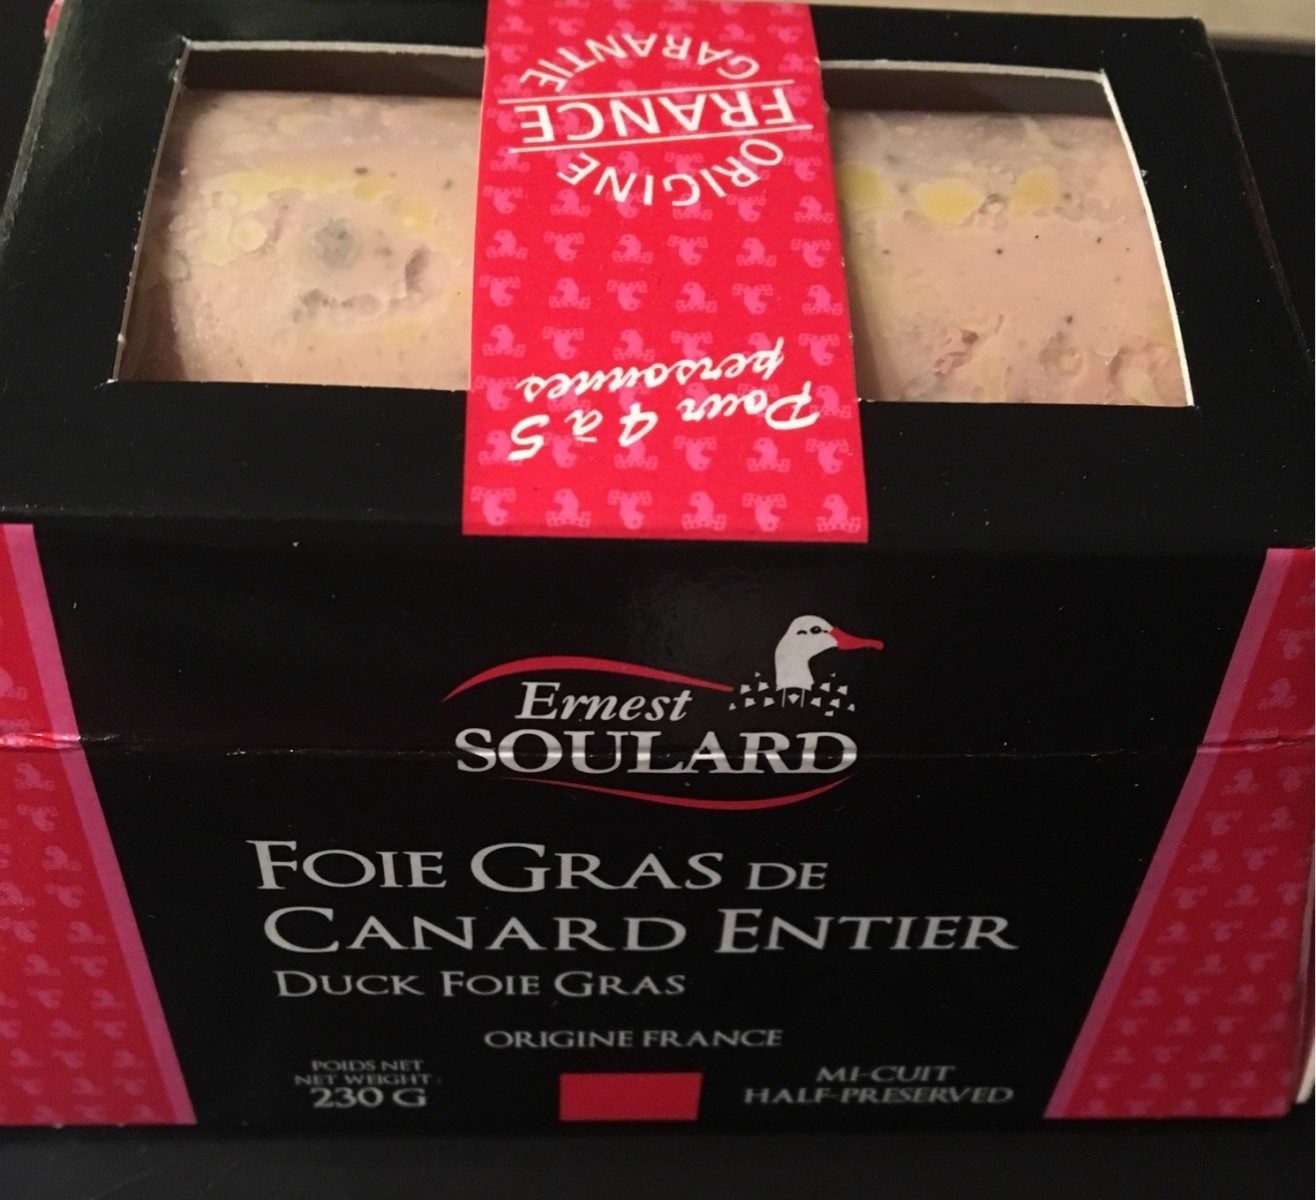 Foie gras de canard entier - Product - fr